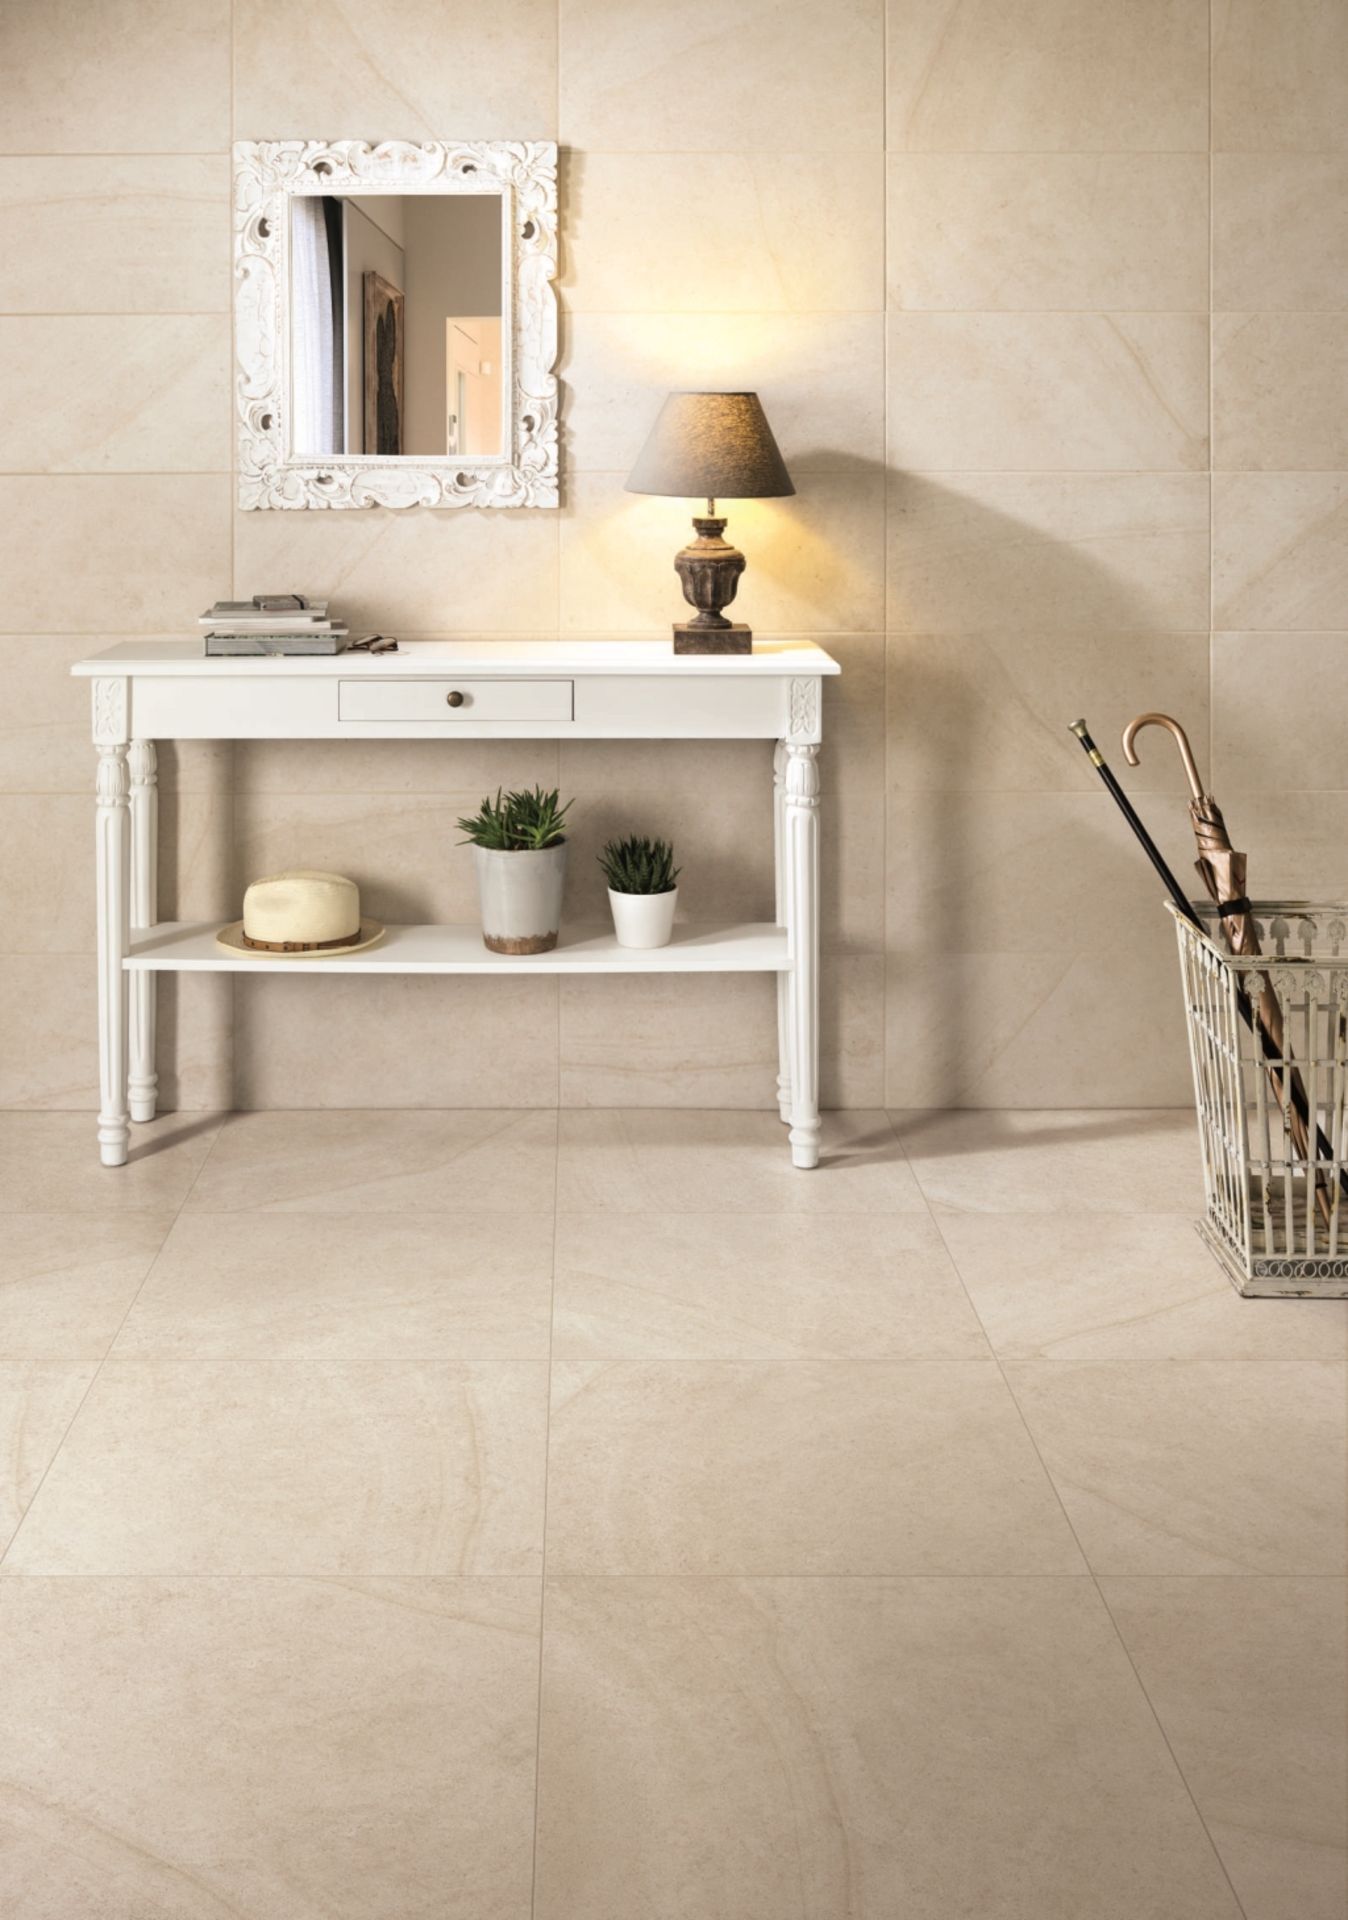 Maison Blanc 9MM 60X60CM High Quality Italian Porcelain tiles 10 pallets - Image 2 of 3